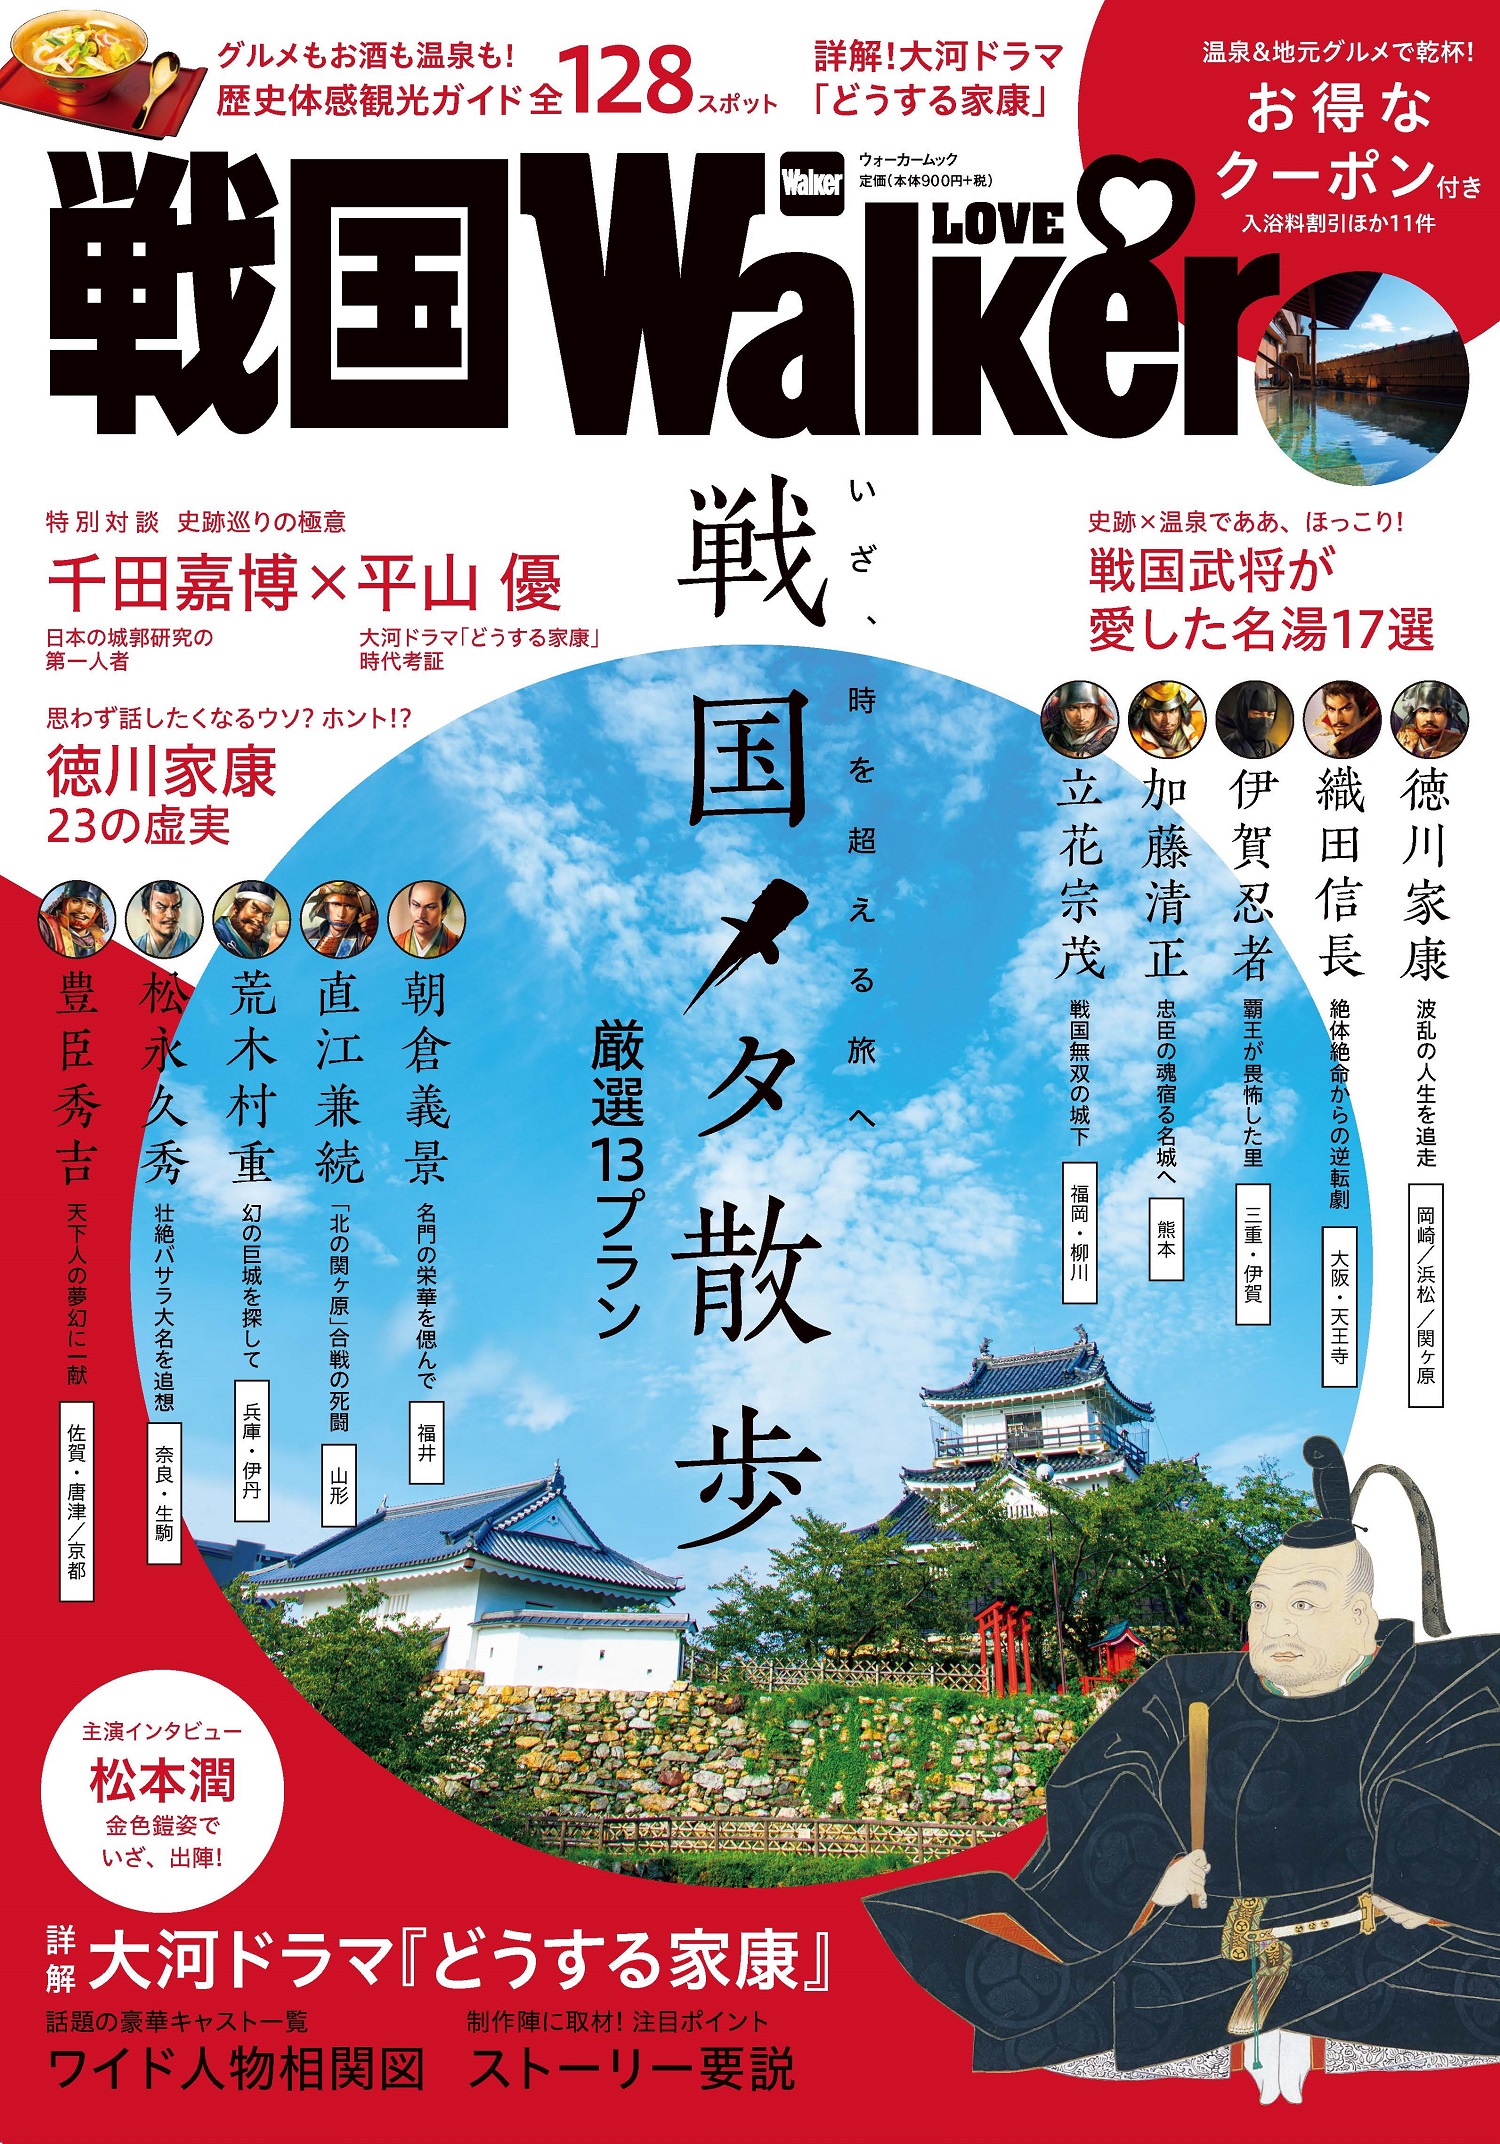 新しいスタイルの観光ガイド『戦国LOVEWalker』発売！戦国時代を体感できるスポットを厳選紹介
